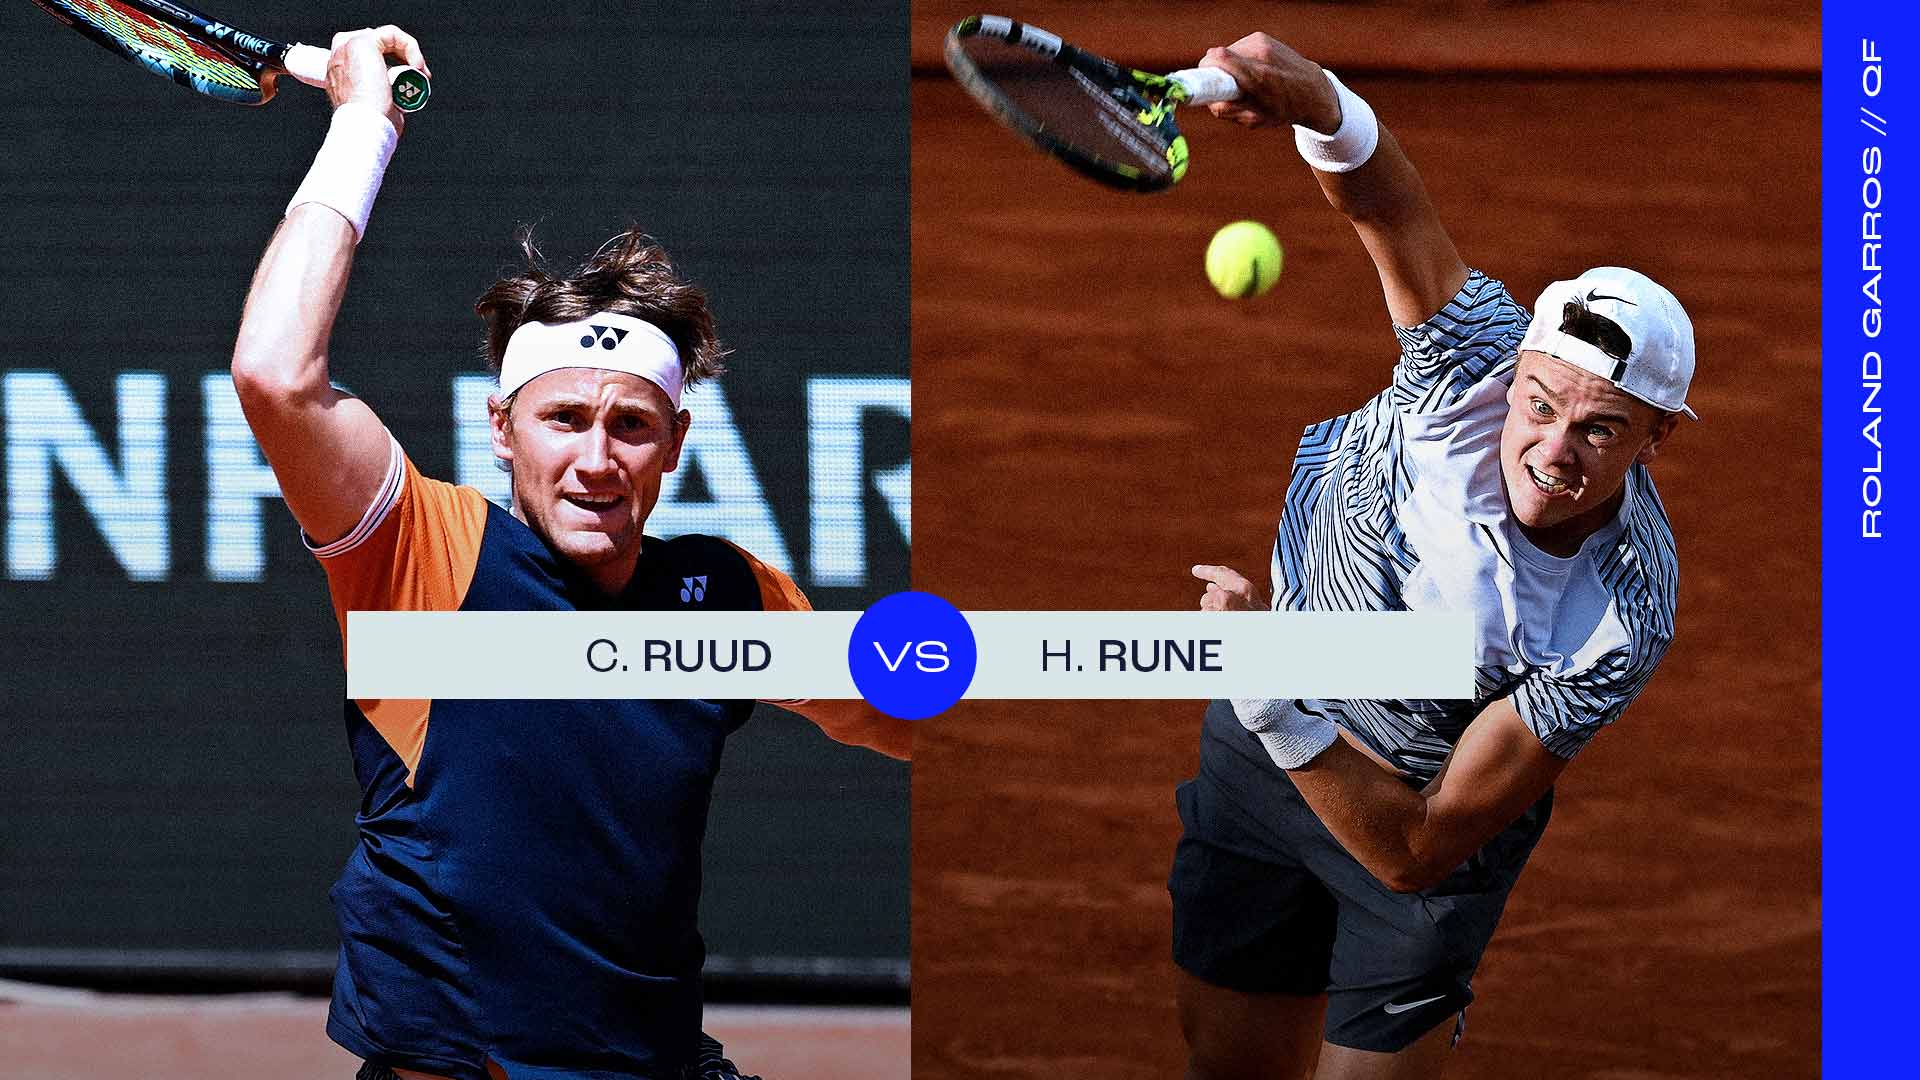 Ruud vs. Rune